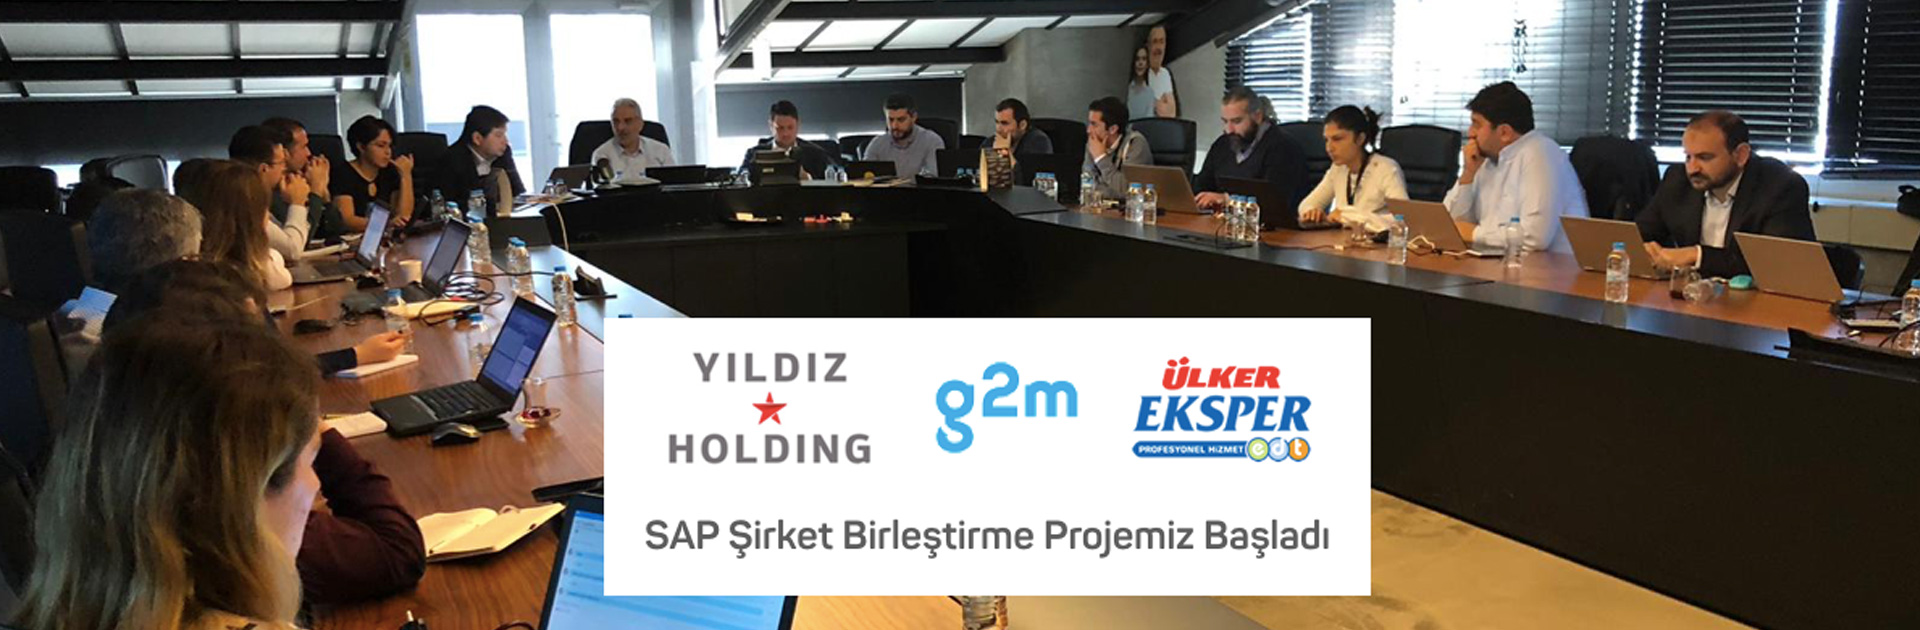 Yıldız Holding G2M & Eksper SAP Projesi Renova Danışmanlığında Başladı